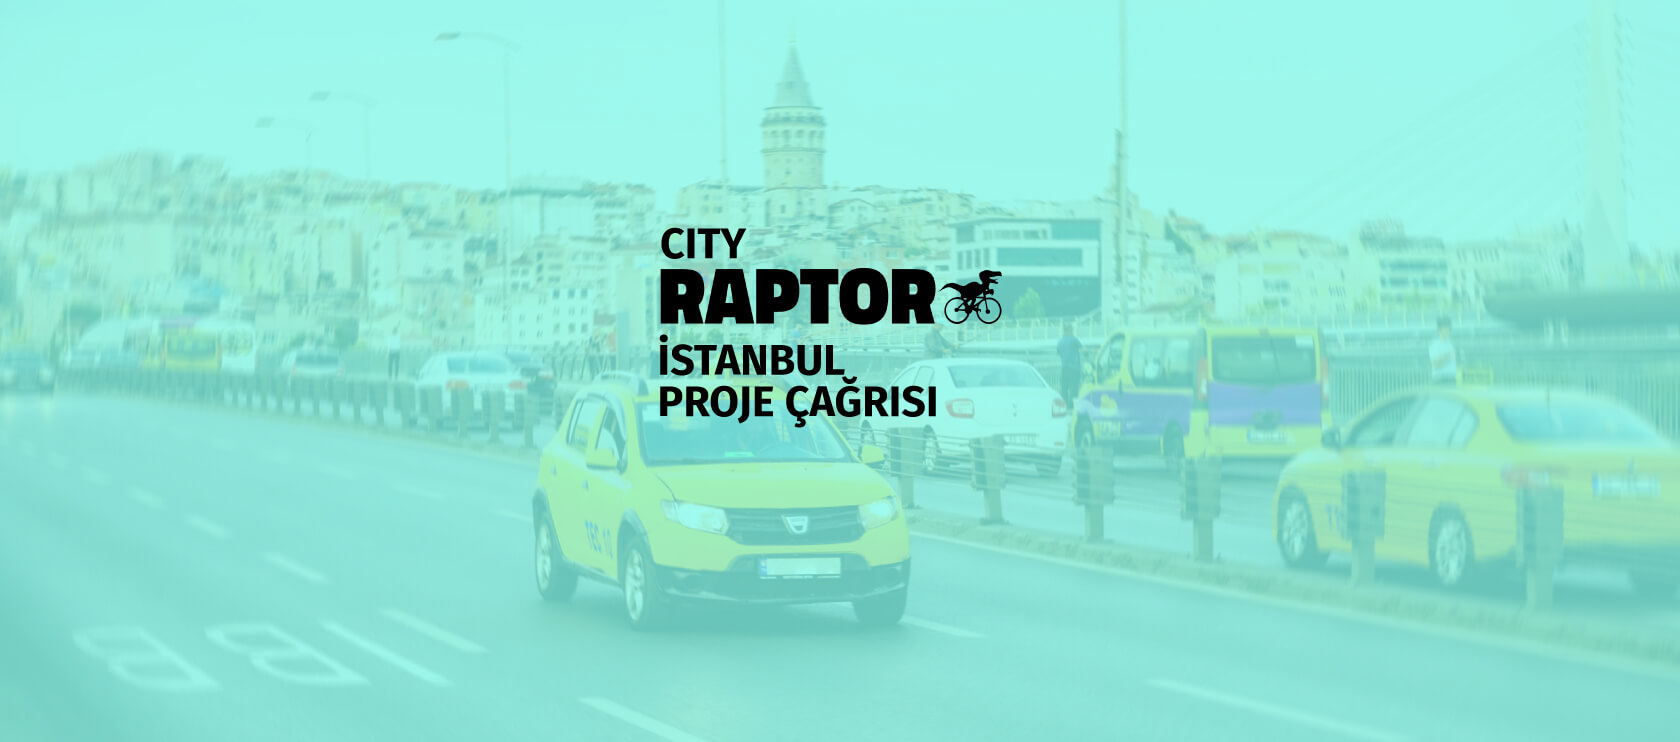 Toplamda 90 bin Euro ödüllü CITY RAPTOR İSTANBUL için proje başvuruları açıldı